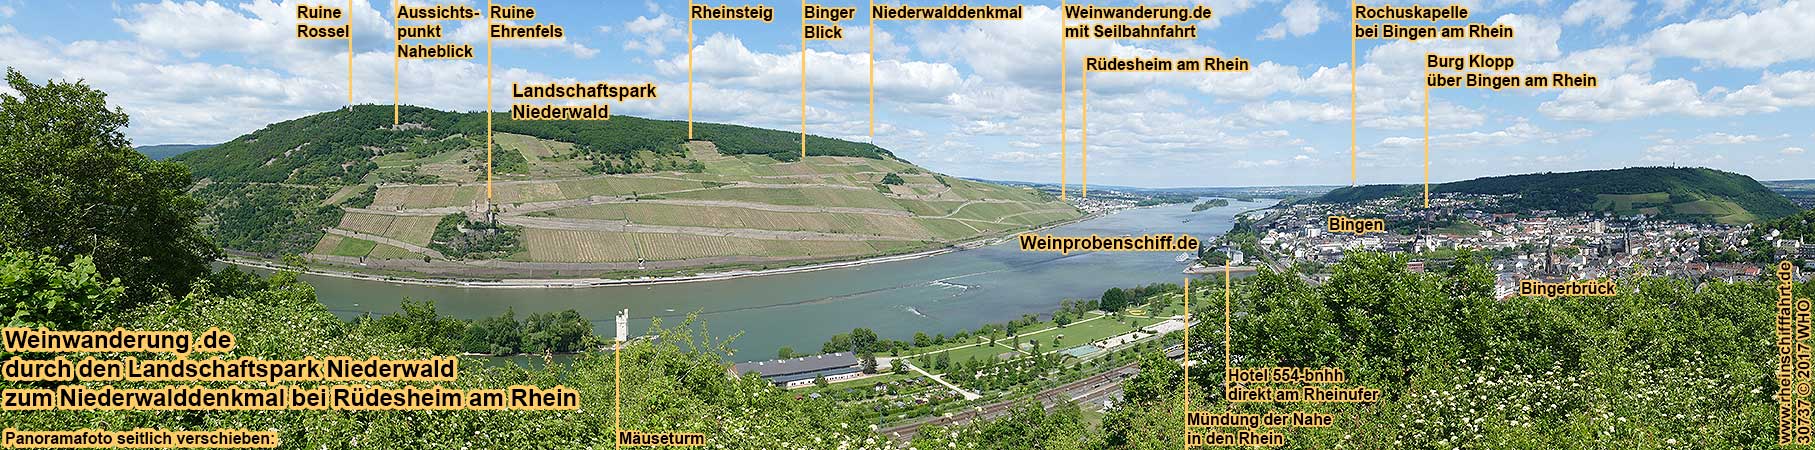 Groe gefhrte Weinwanderung ca. 4 km durch den Landschaftspark Niederwald entlang dem Rheinsteig zum Niederwalddenkmal  und zum Feldtor am Bahnhof Rdesheim am Rhein mit 4 Weinproben im Weinberg